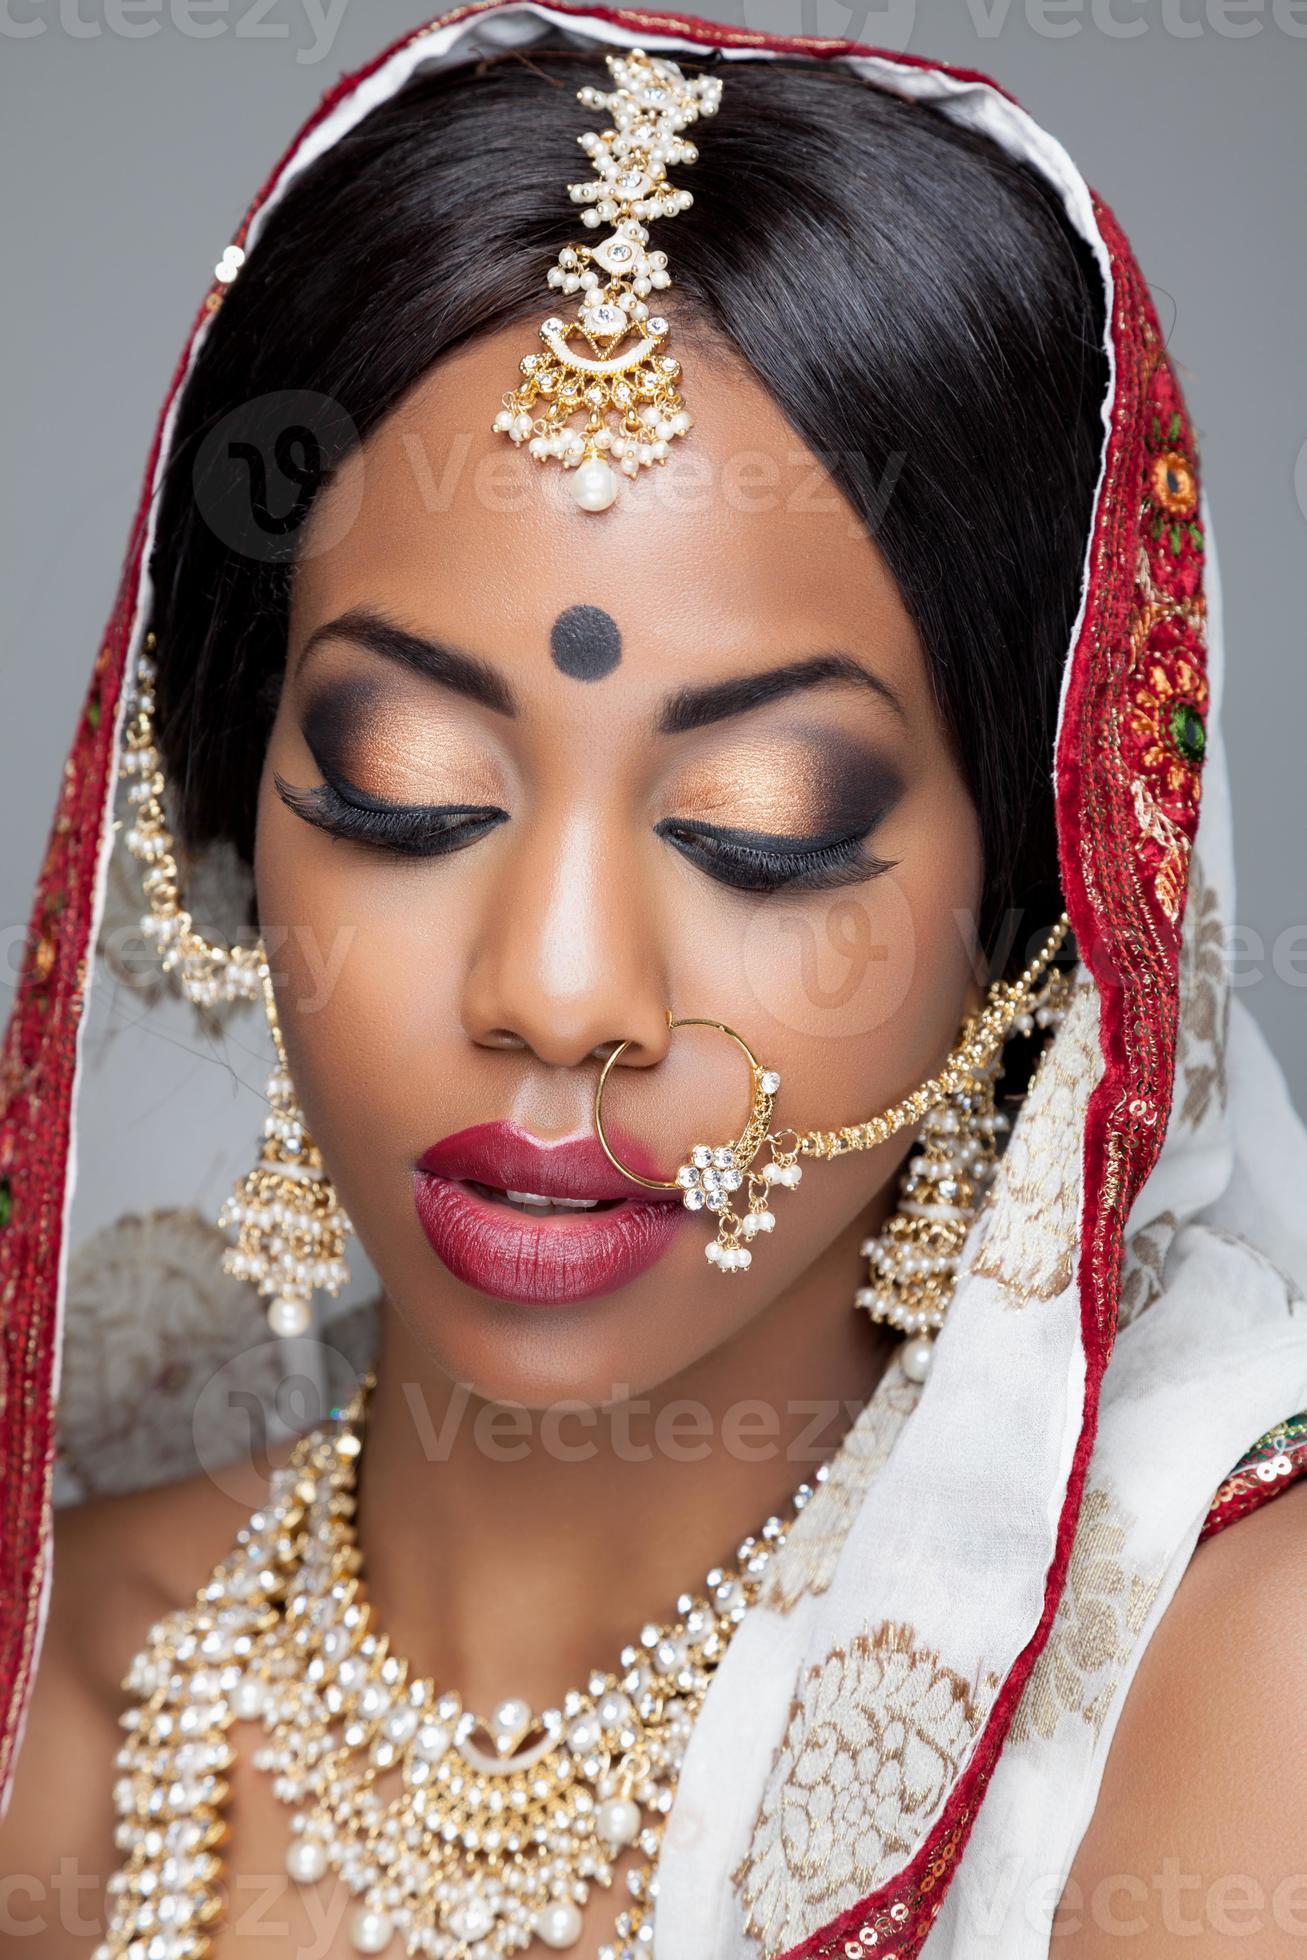 Shipley Eigenaardig Misschien Indiase vrouw in traditionele kleding met bruids make-up en sieraden  1182986 stockfoto bij Vecteezy